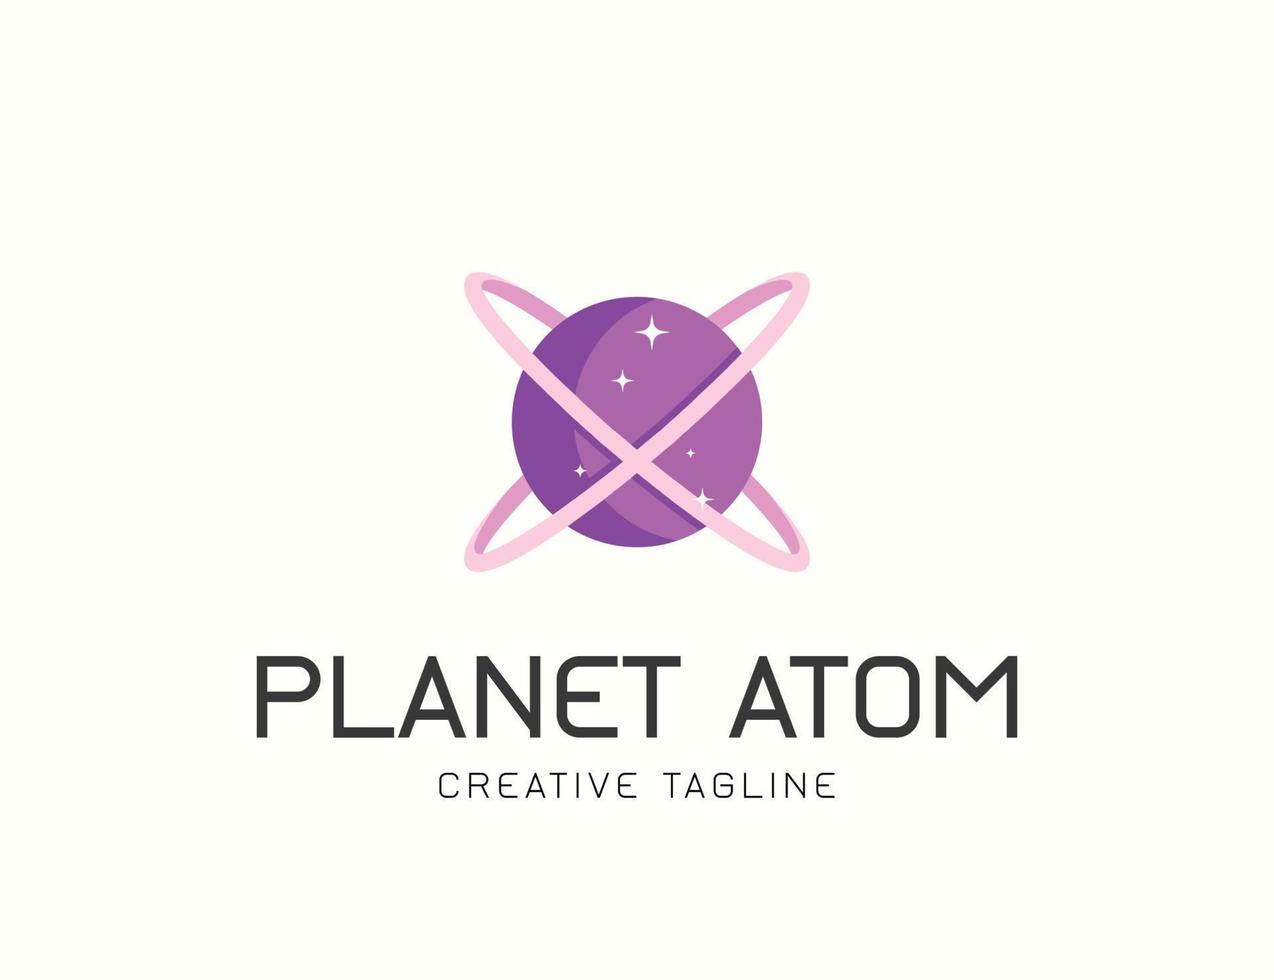 Planet Atom space logo design vector